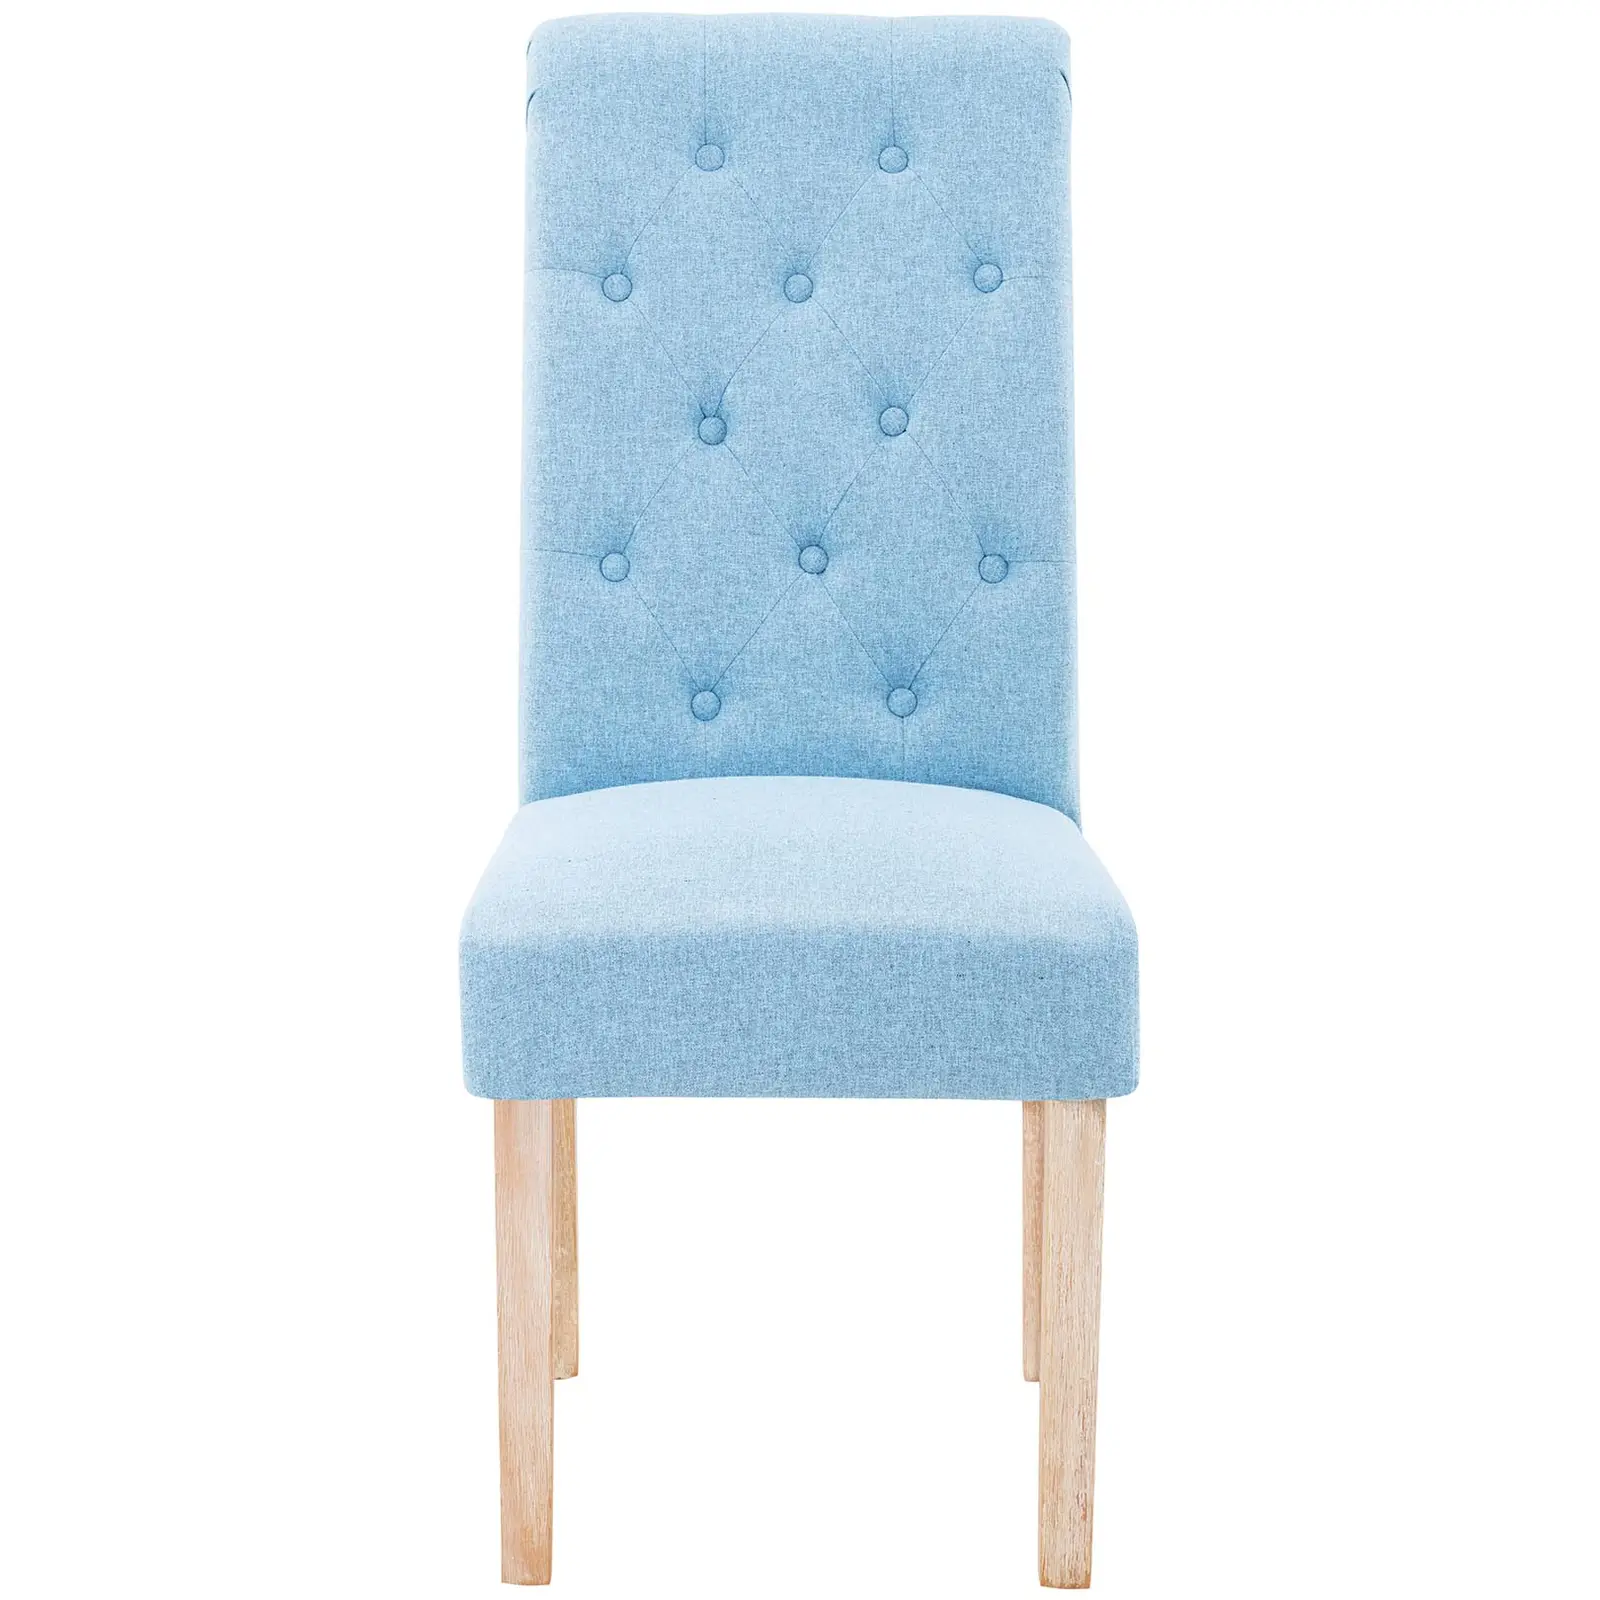 Chaise en tissu - Lot de 2 - 180 kg max. - Surface d'assise de 46 x 42 cm - Coloris bleu ciel